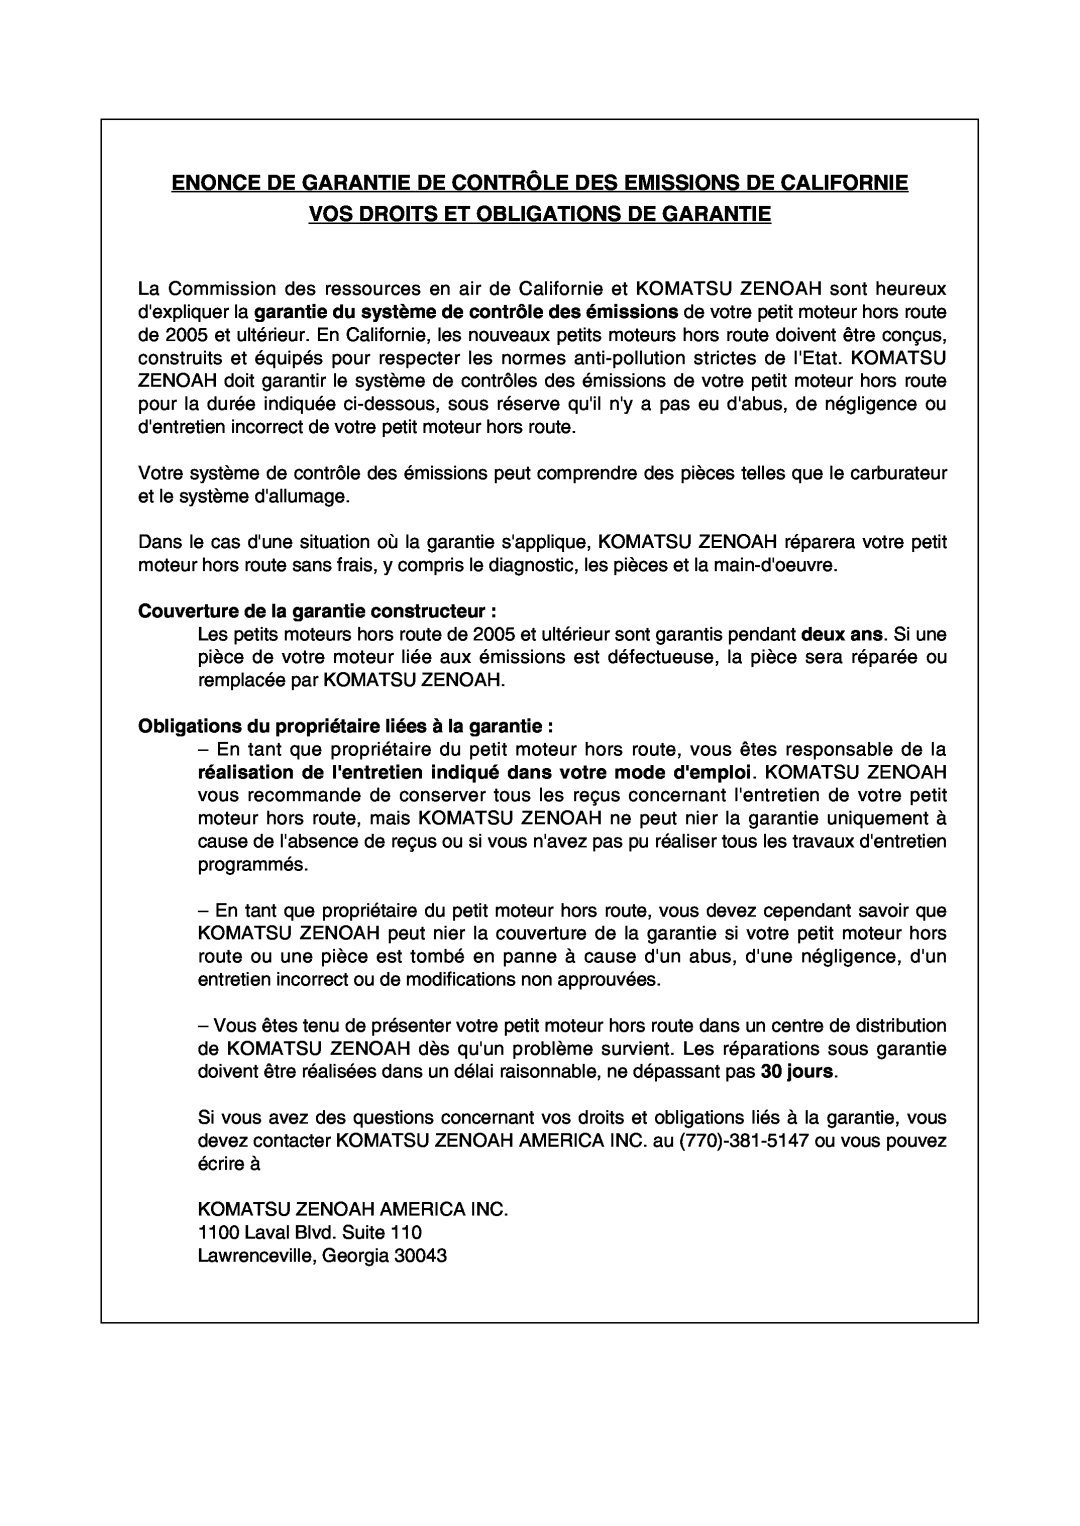 RedMax HEZ2401S manual Enonce De Garantie De Contrôle Des Emissions De Californie, Vos Droits Et Obligations De Garantie 